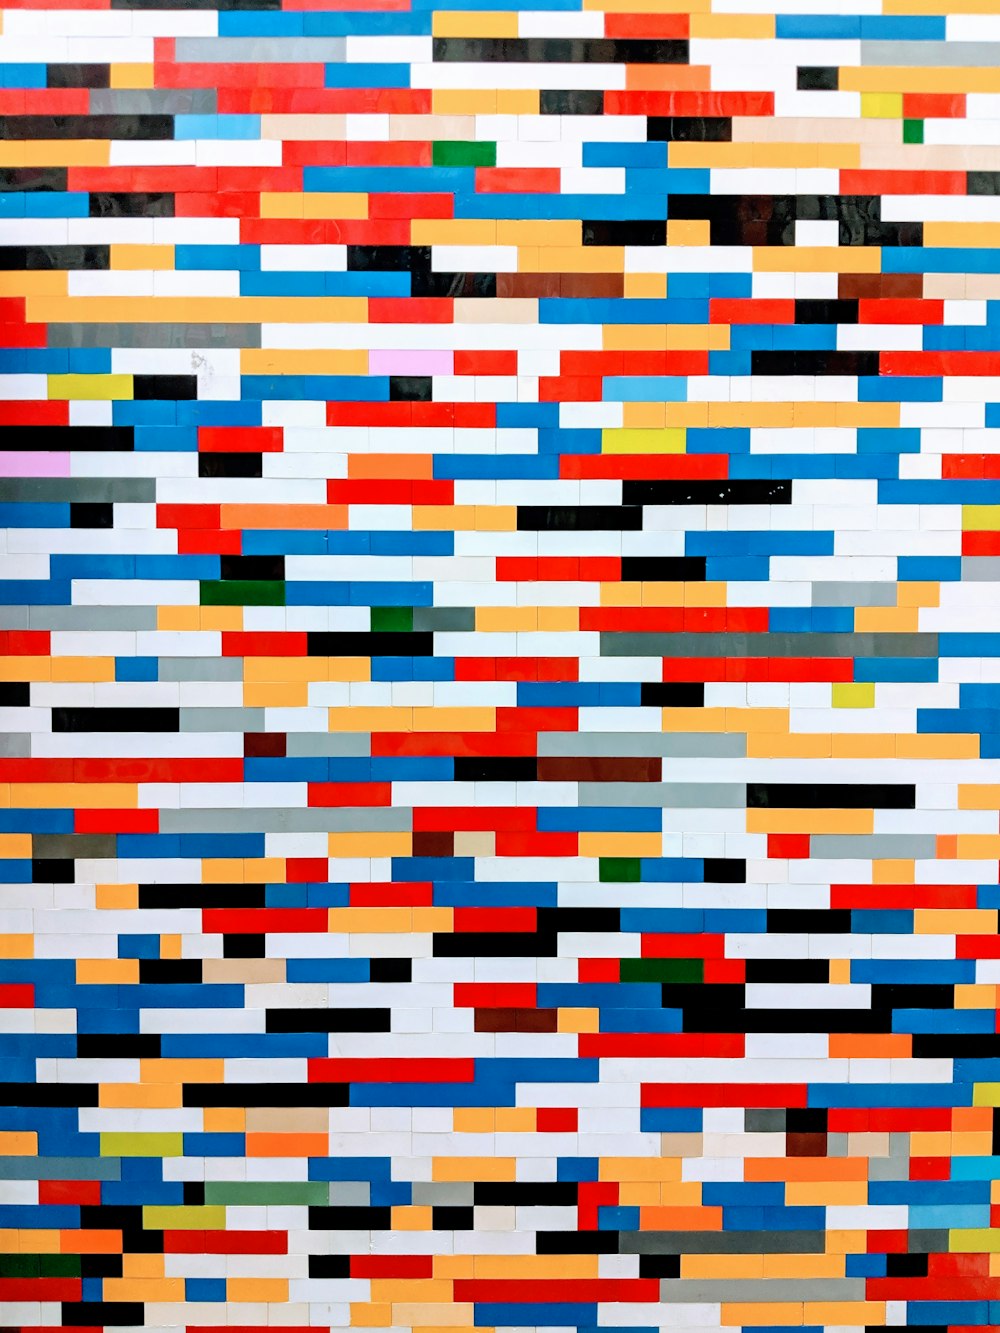 pretty pattern desktop wallpapers